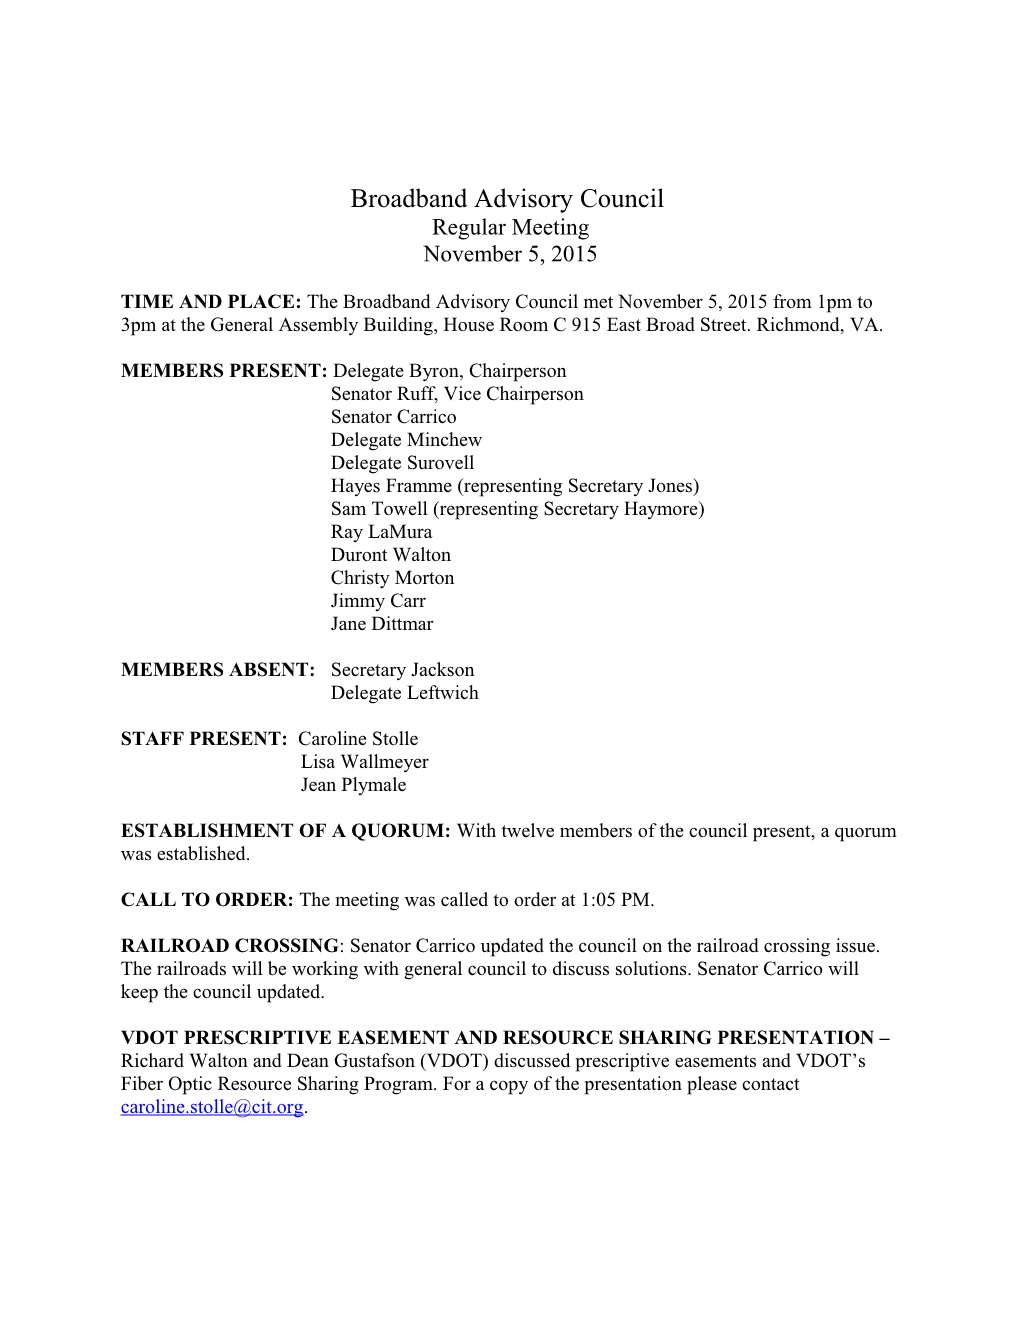 Broadband Advisory Council s3